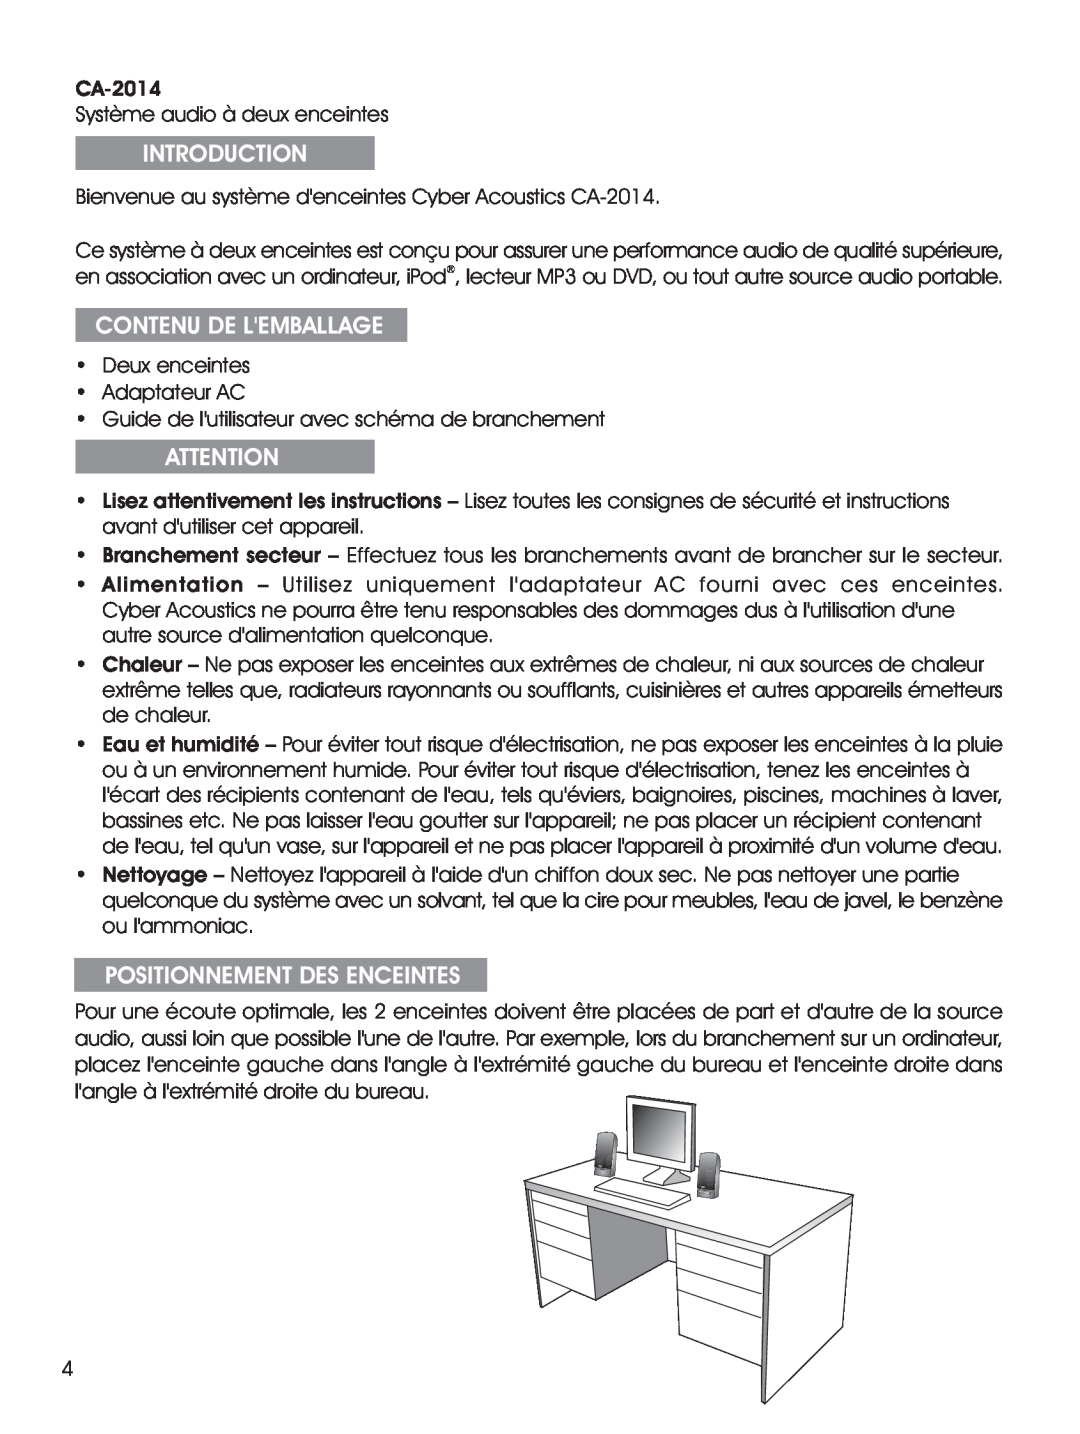 Cyber Acoustics CA-2014 manual Contenu De Lemballage, Positionnement Des Enceintes, Introduction 